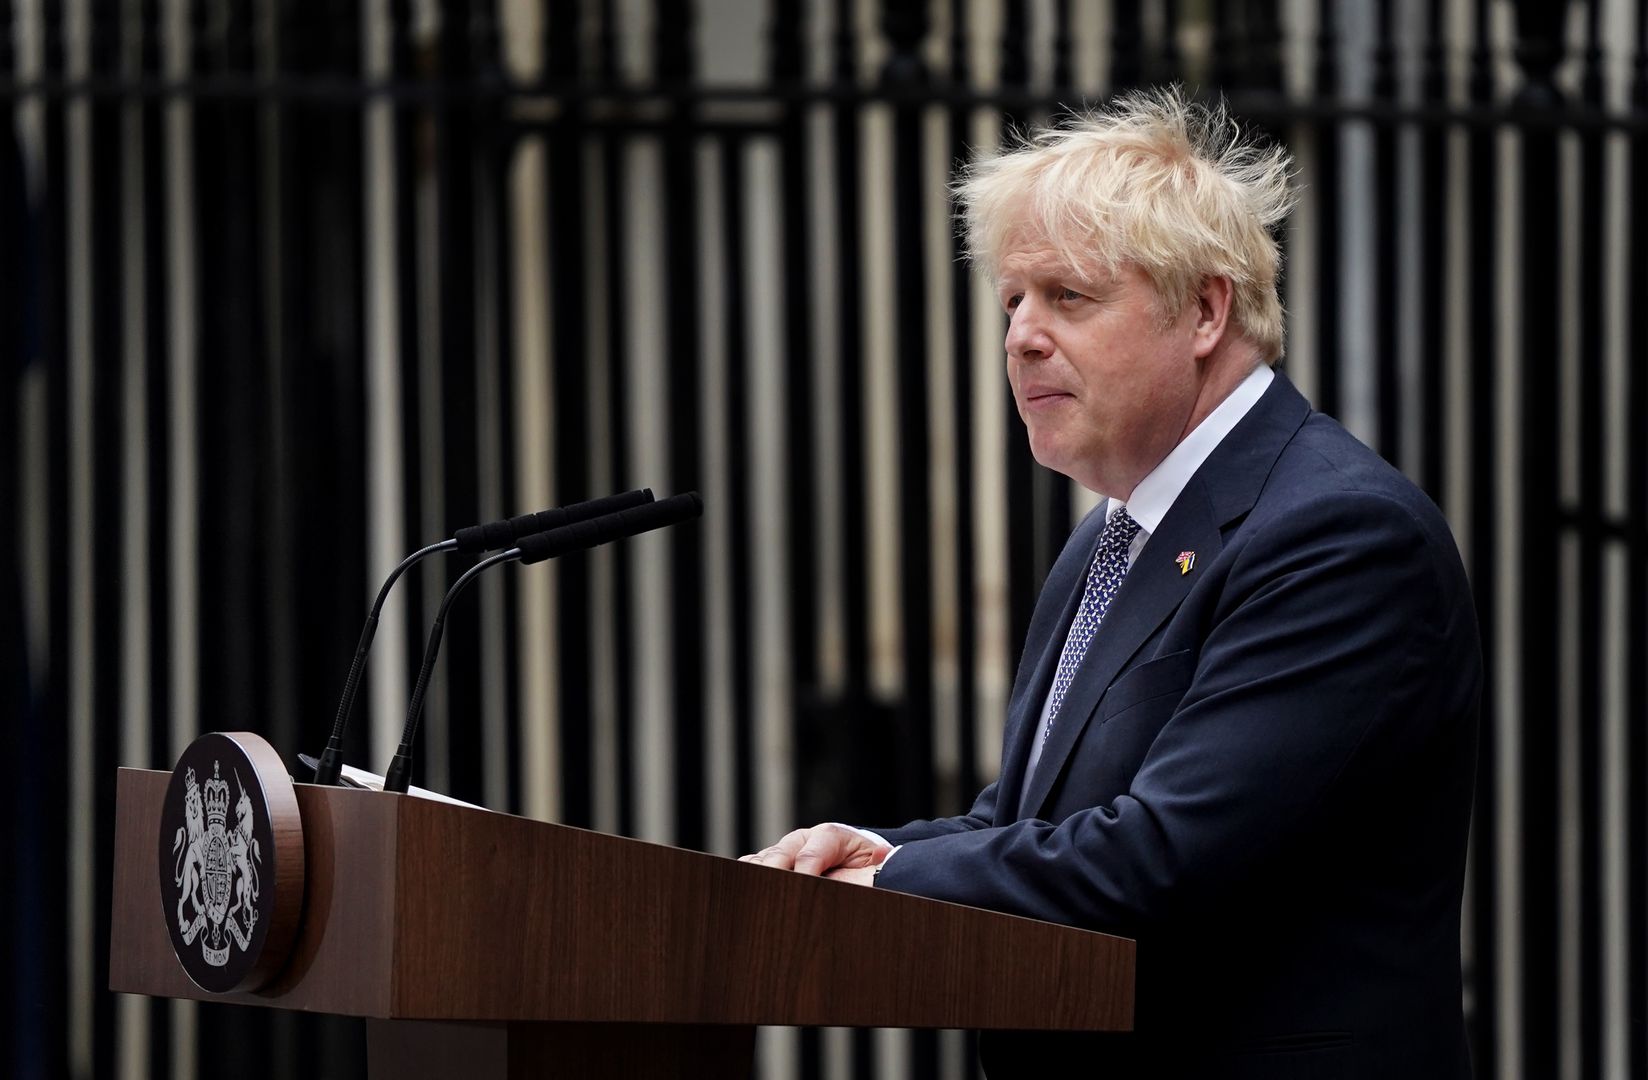 Boris Johnson ogłasza rezygnację z przewodnictwa Partii Konserwatywnej. Pozostanie premierem prawdopodobnie aż do wyłonienia nowego lidera rządzących torysów (Photo by Gareth Fuller/PA Images via Getty Images)